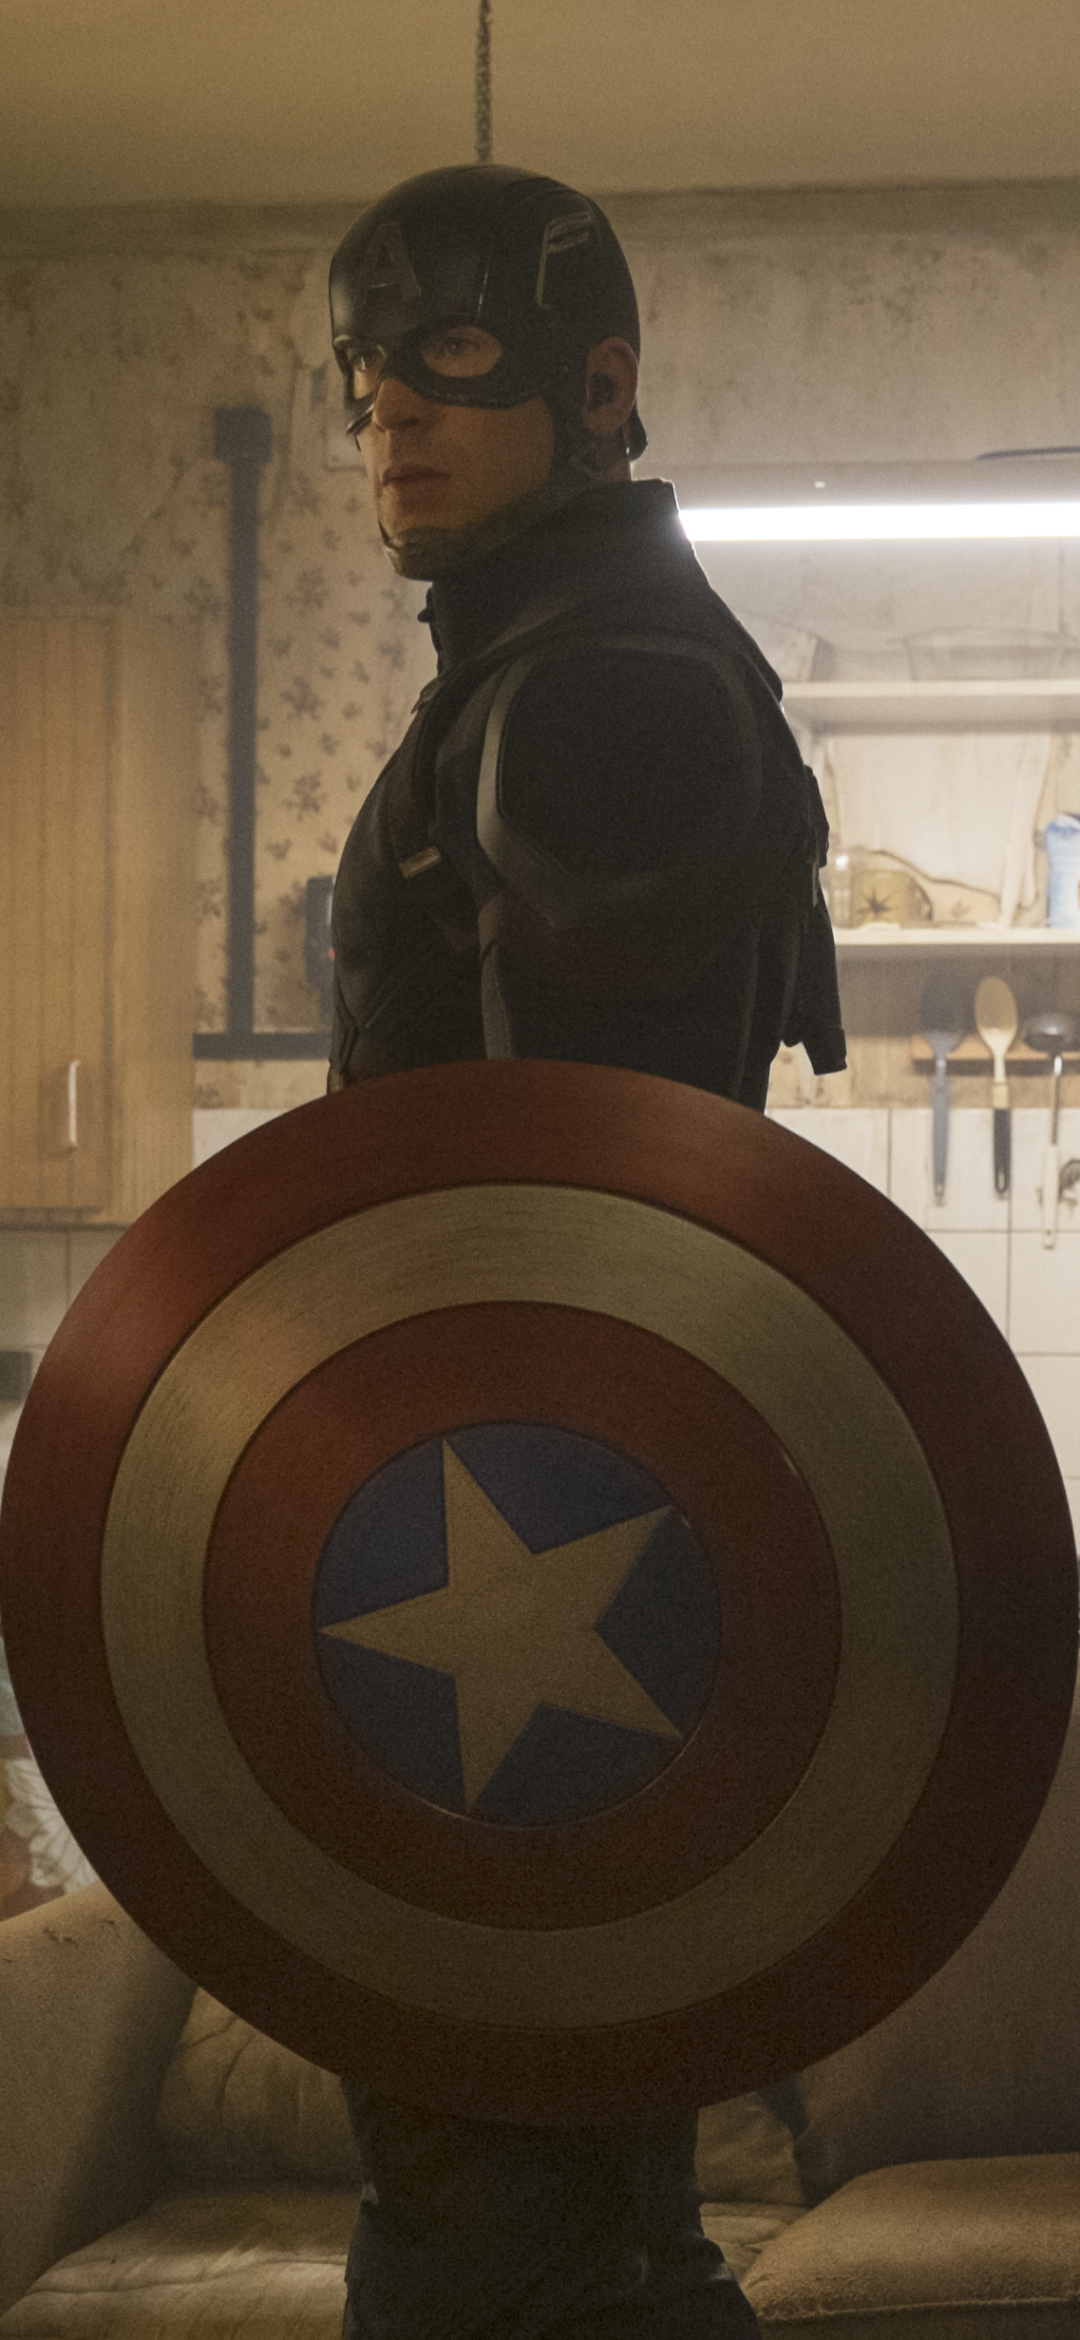 Descarga gratuita de fondo de pantalla para móvil de Películas, Capitan América, Capitán América: Civil War, Capitan America.